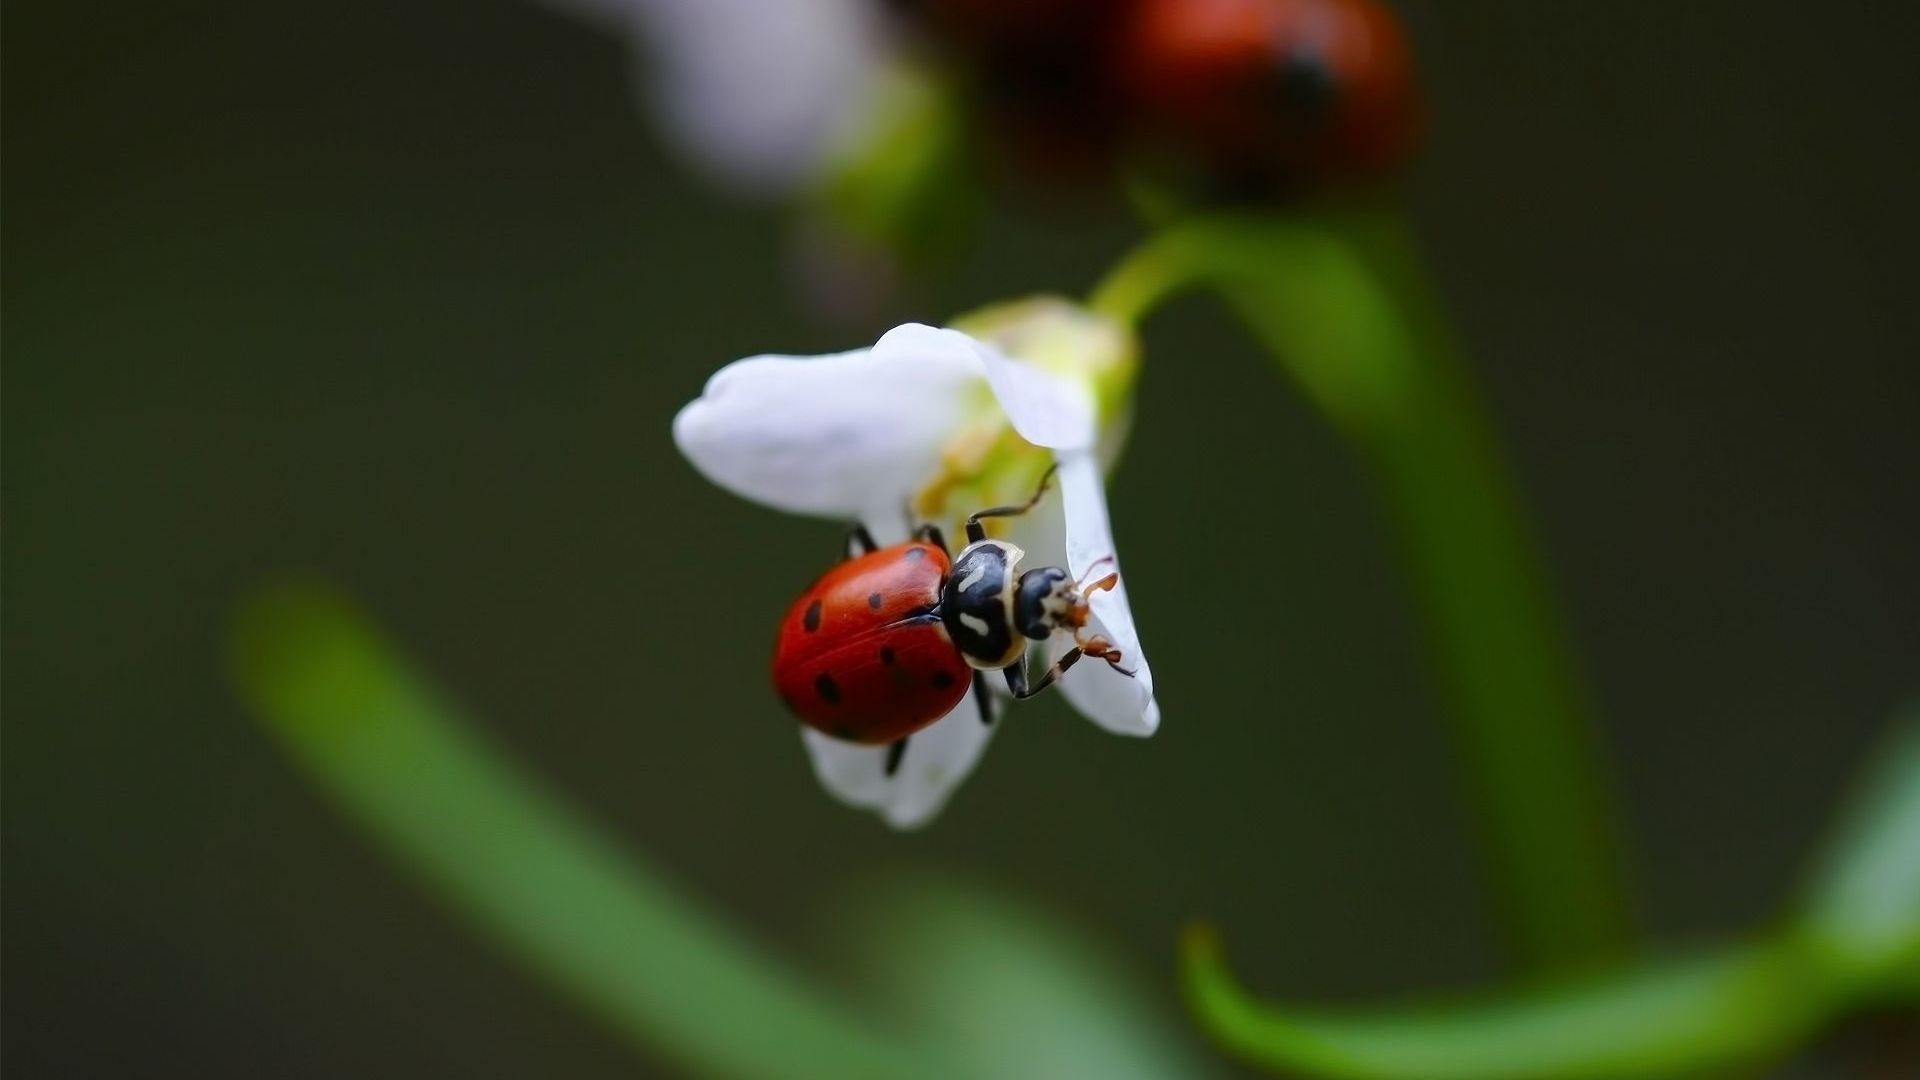 Ladybug on White Flower for 1920 x 1080 HDTV 1080p resolution